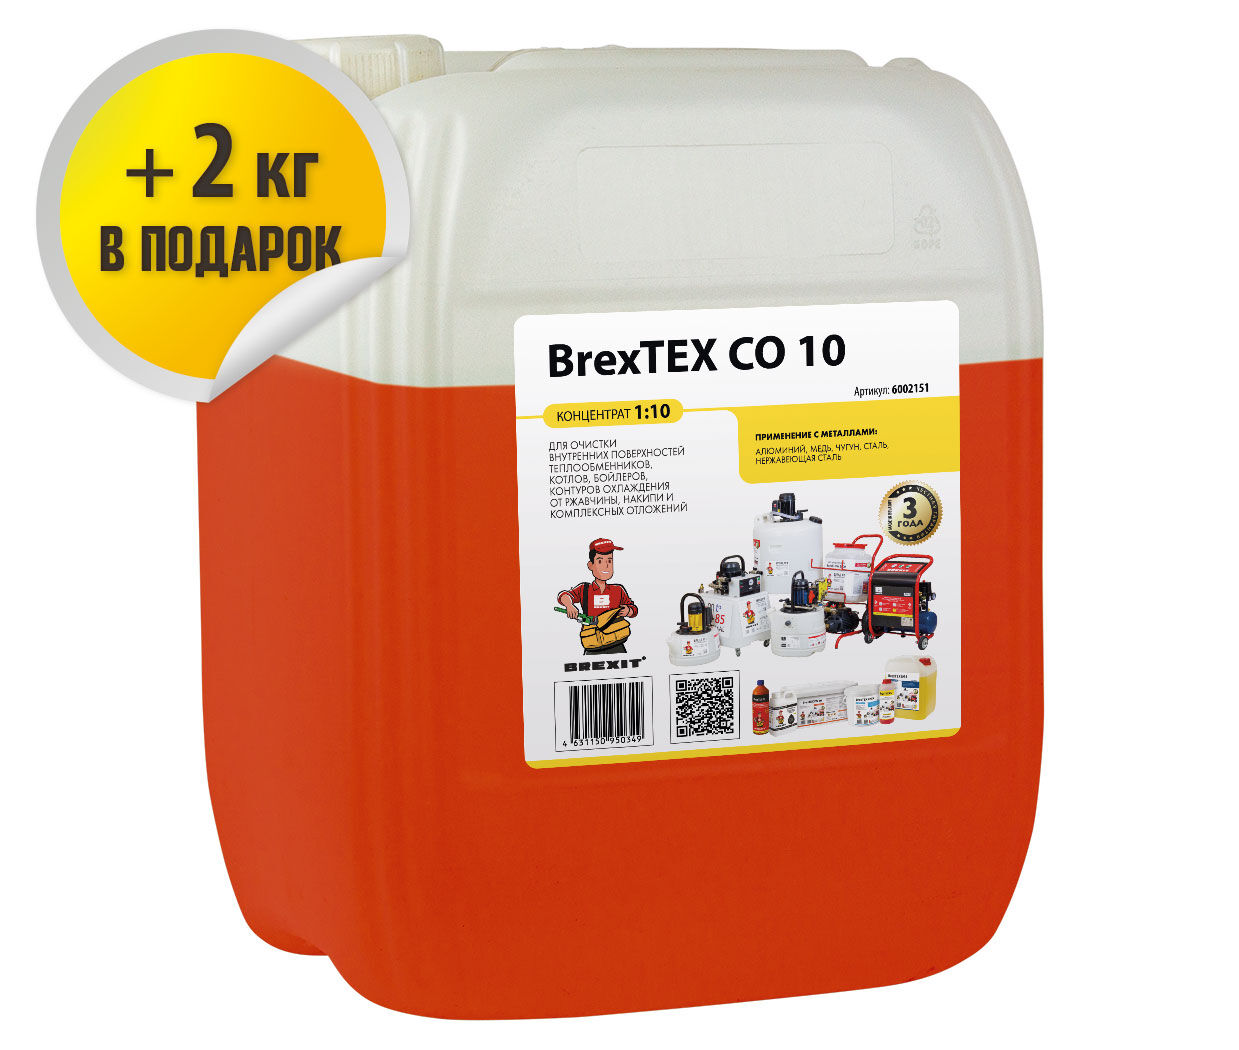 Реагент для очистки теплообменного и отопительного оборудования BrexTEX CO 10 brexit